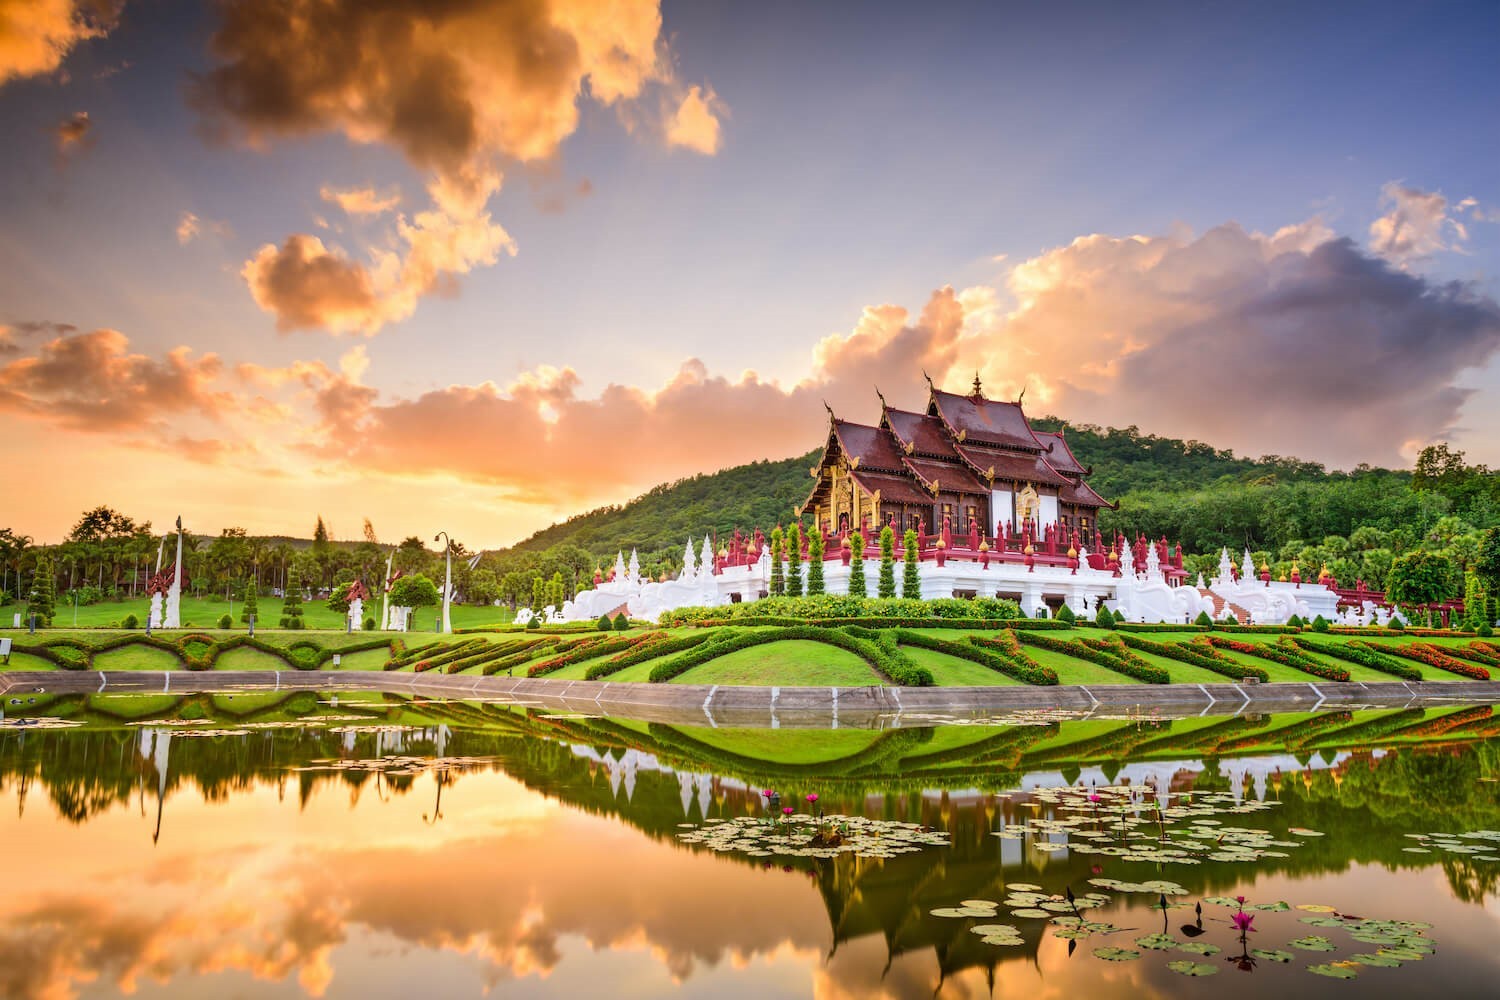 Cung điện mùa hè – Phu Ping Palace ở Chiang Mai